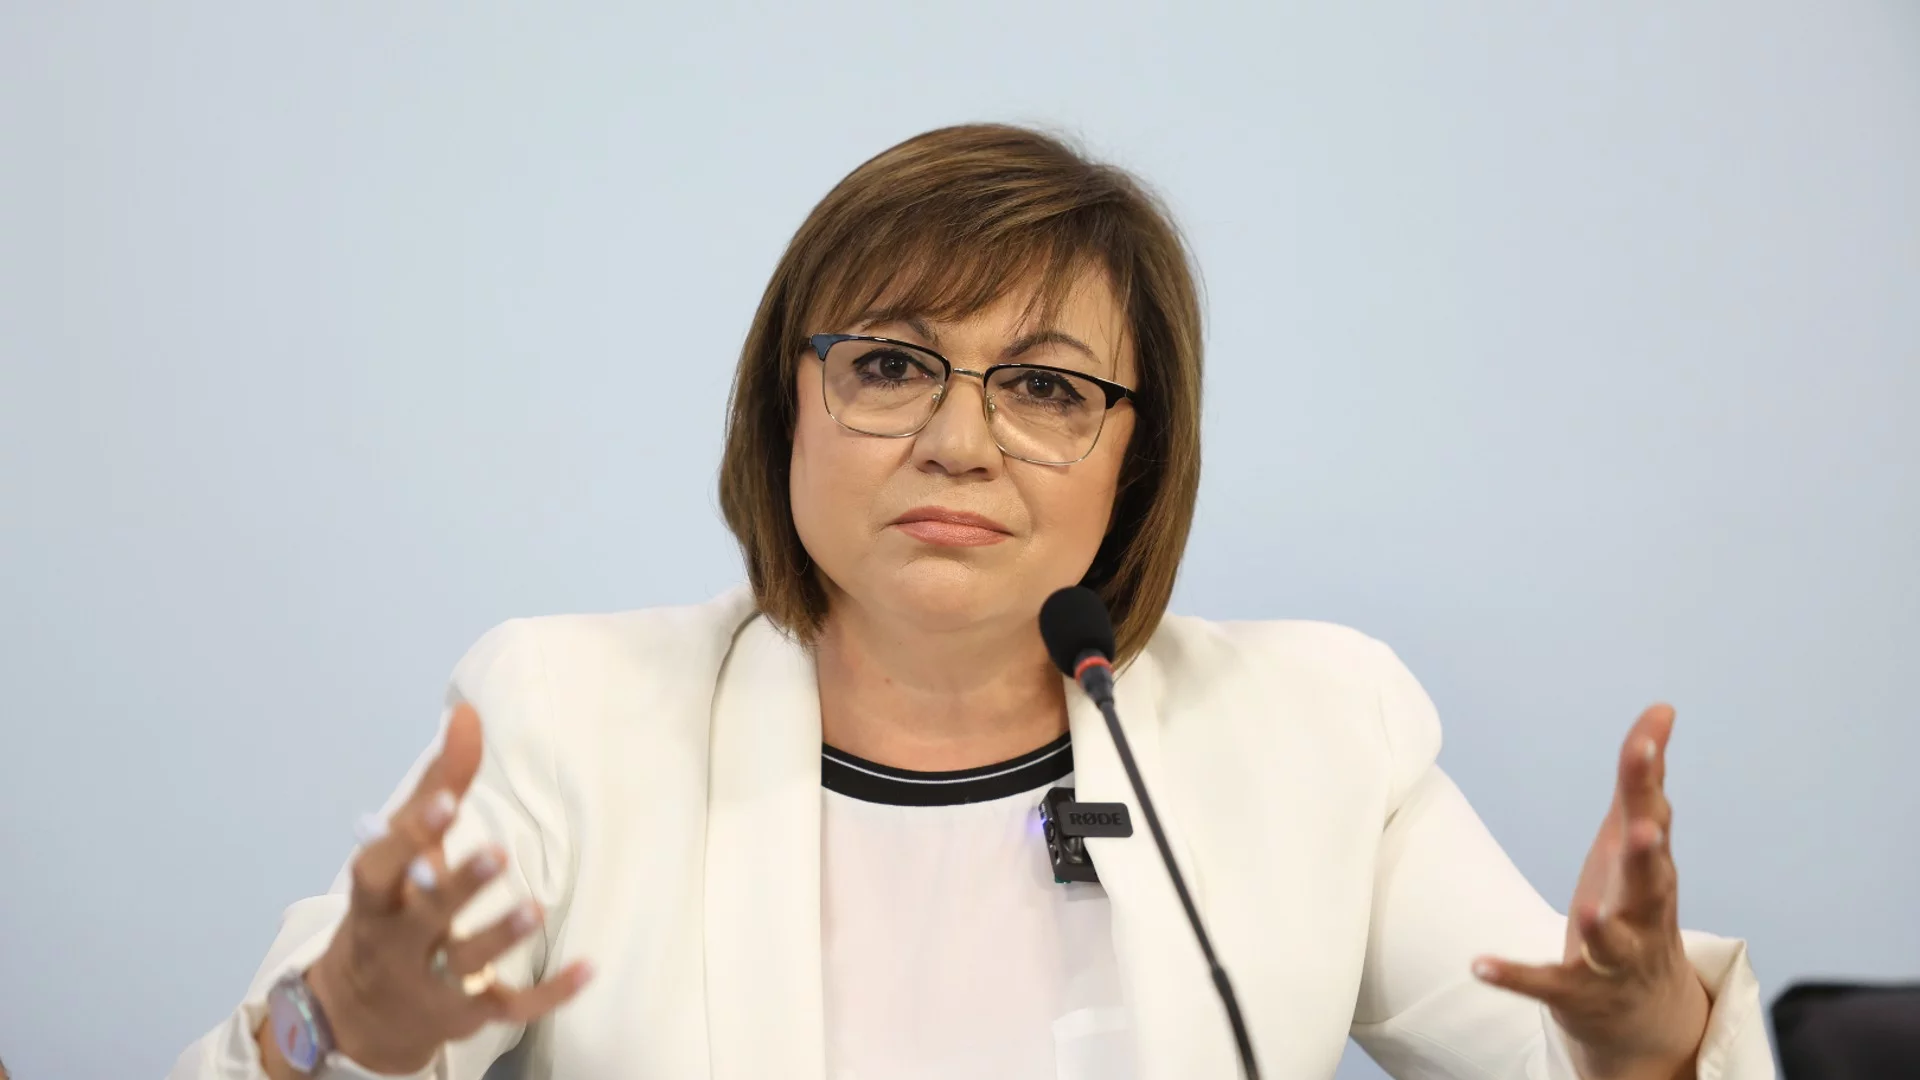 С писмо до Националния съвет: Корнелия Нинова подаде оставката на цялото Изпълнително бюро на БСП